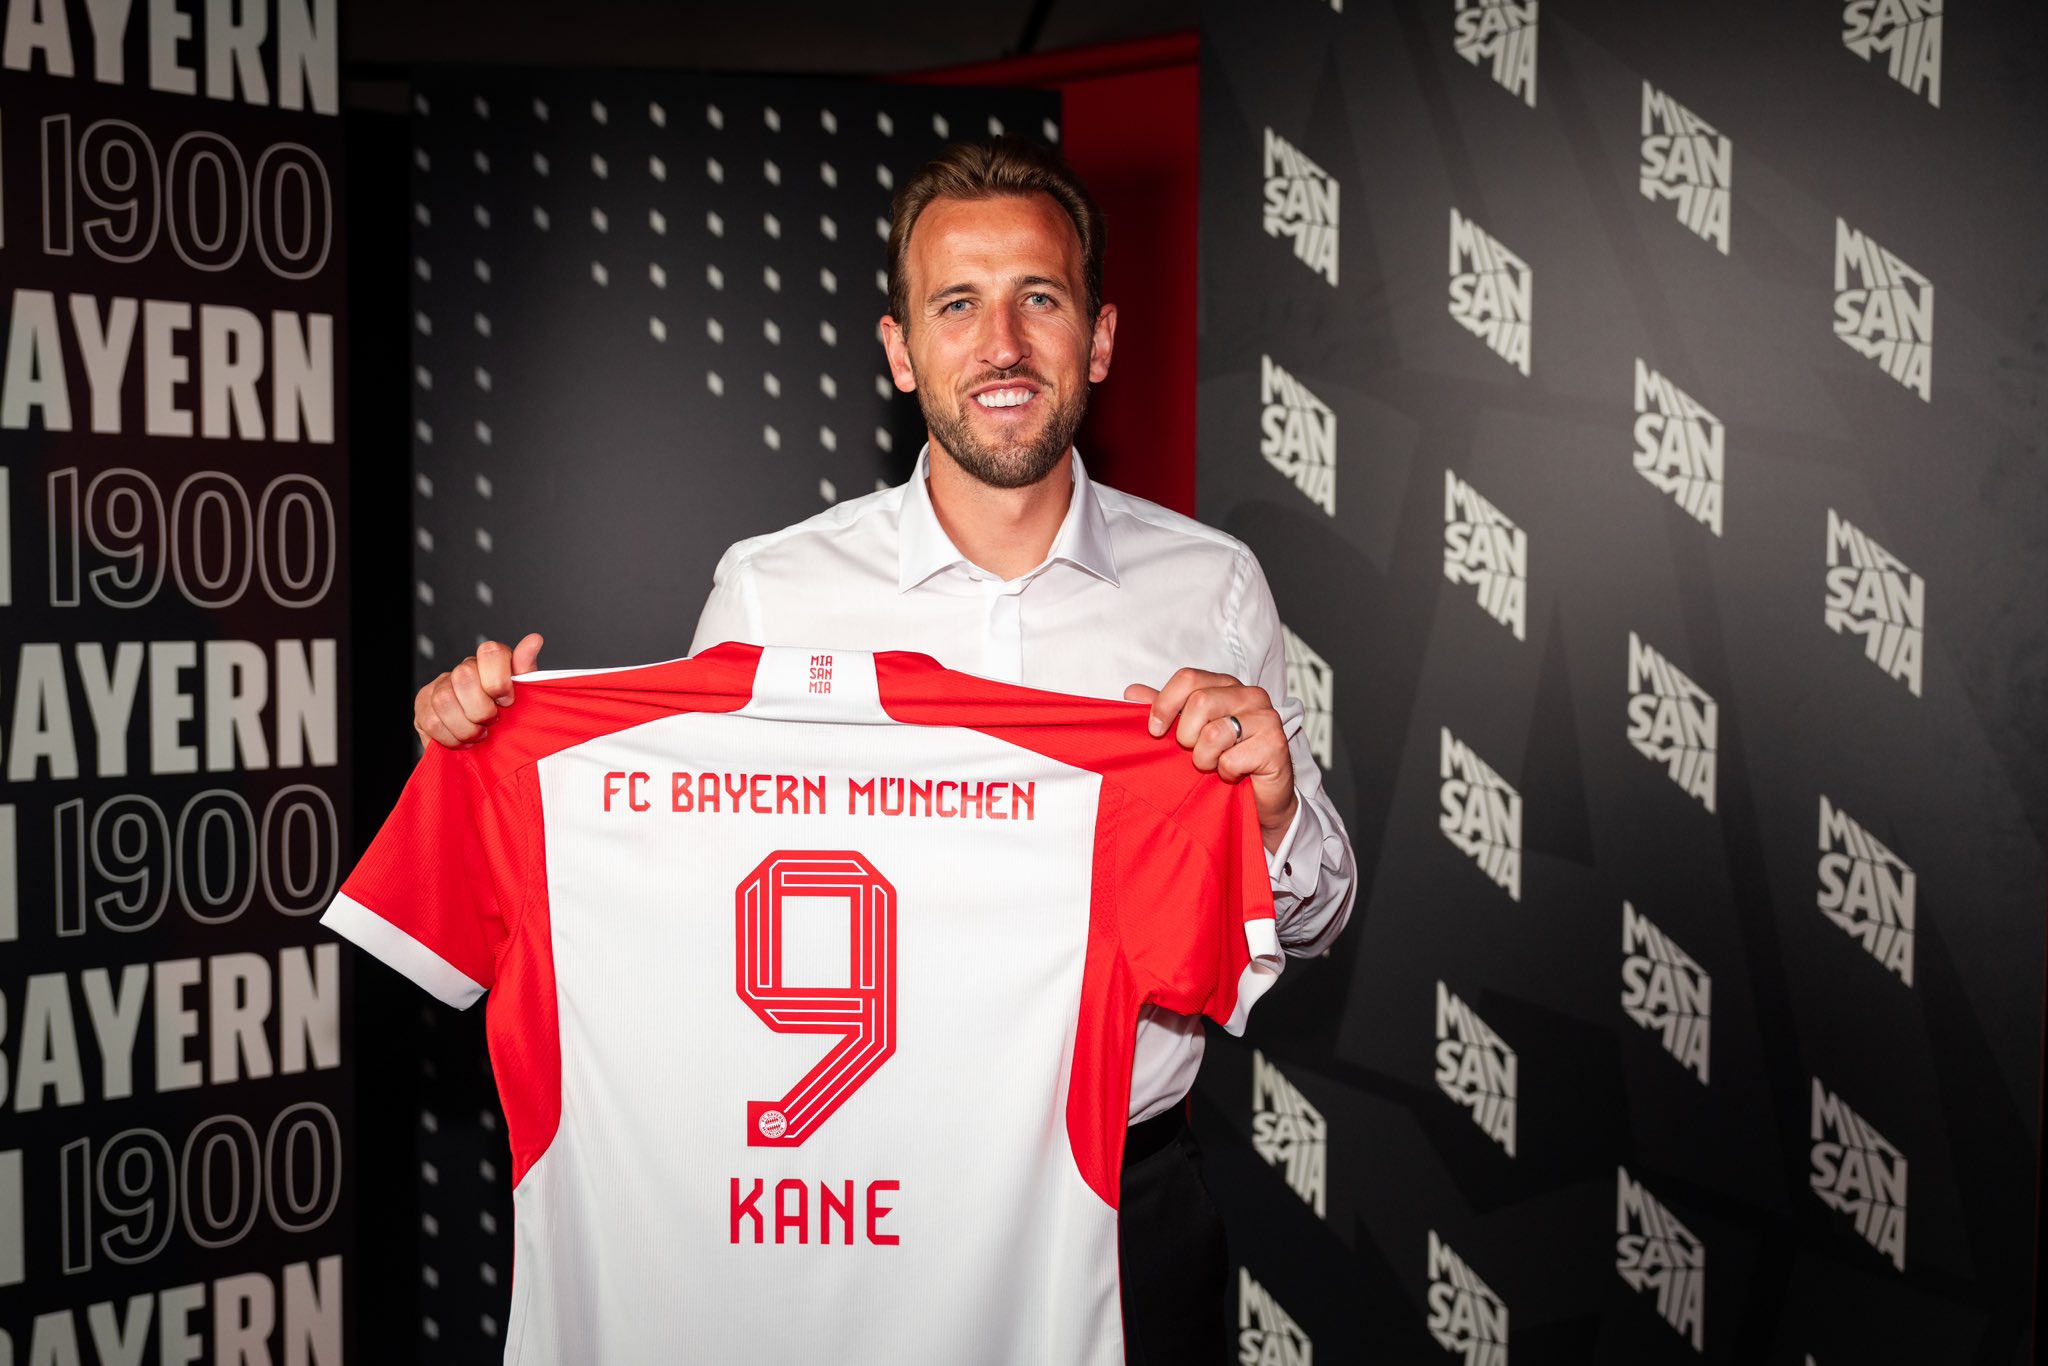 Der Star wird das Trikot Nr. 9 des FC Bayern München tragen